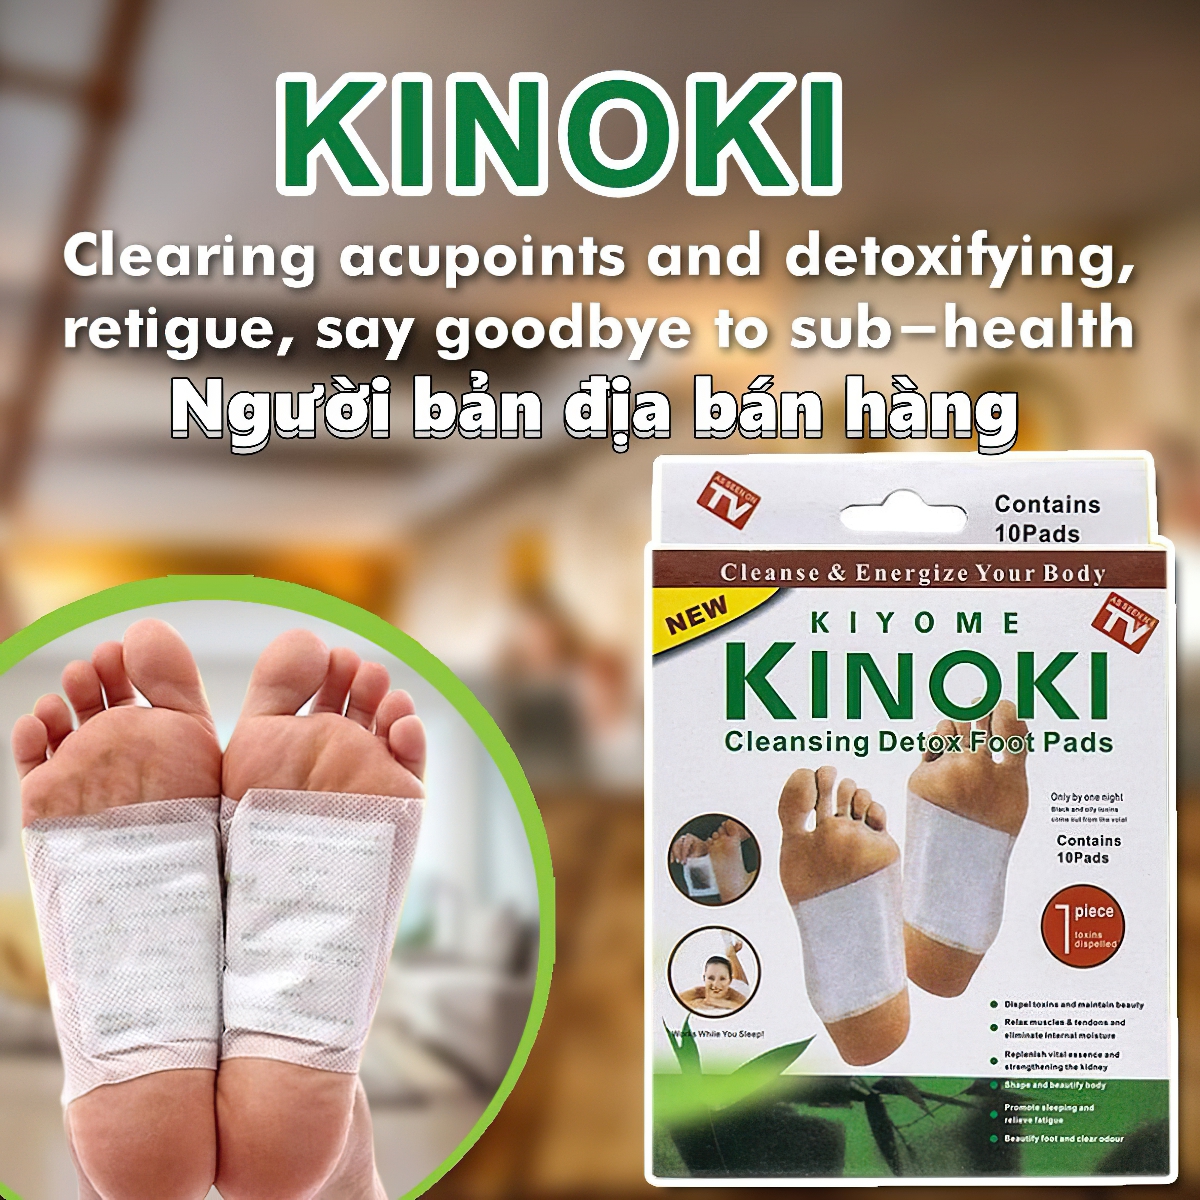 Dán chân thải độc nhật bản KINOKI